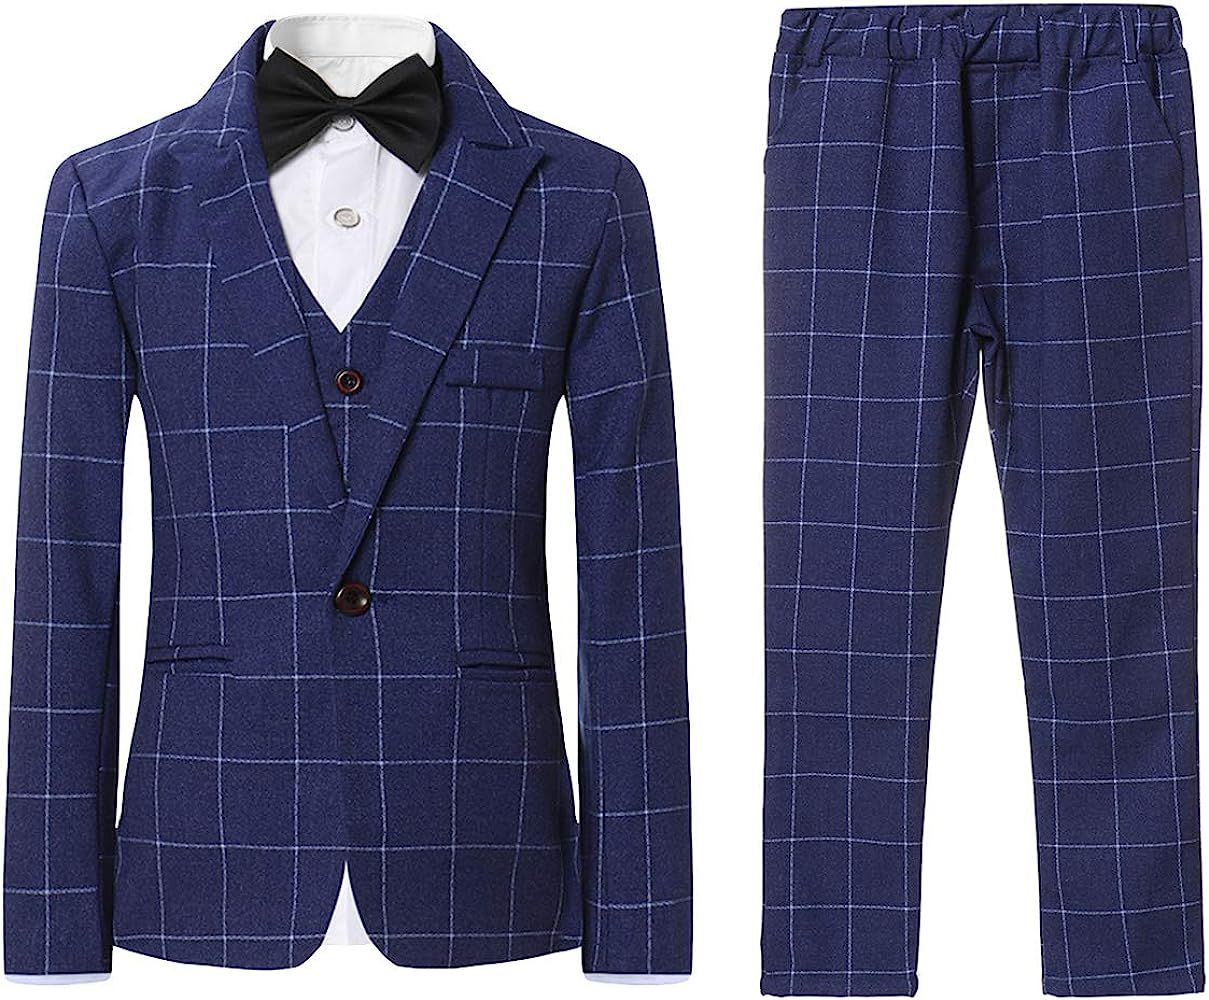 SWOTGdoby Boys Plaid Suits 3 Pieces Suit Set Blazer Vest Pants Formal 7 Colors for Wedding Party | Amazon (US)